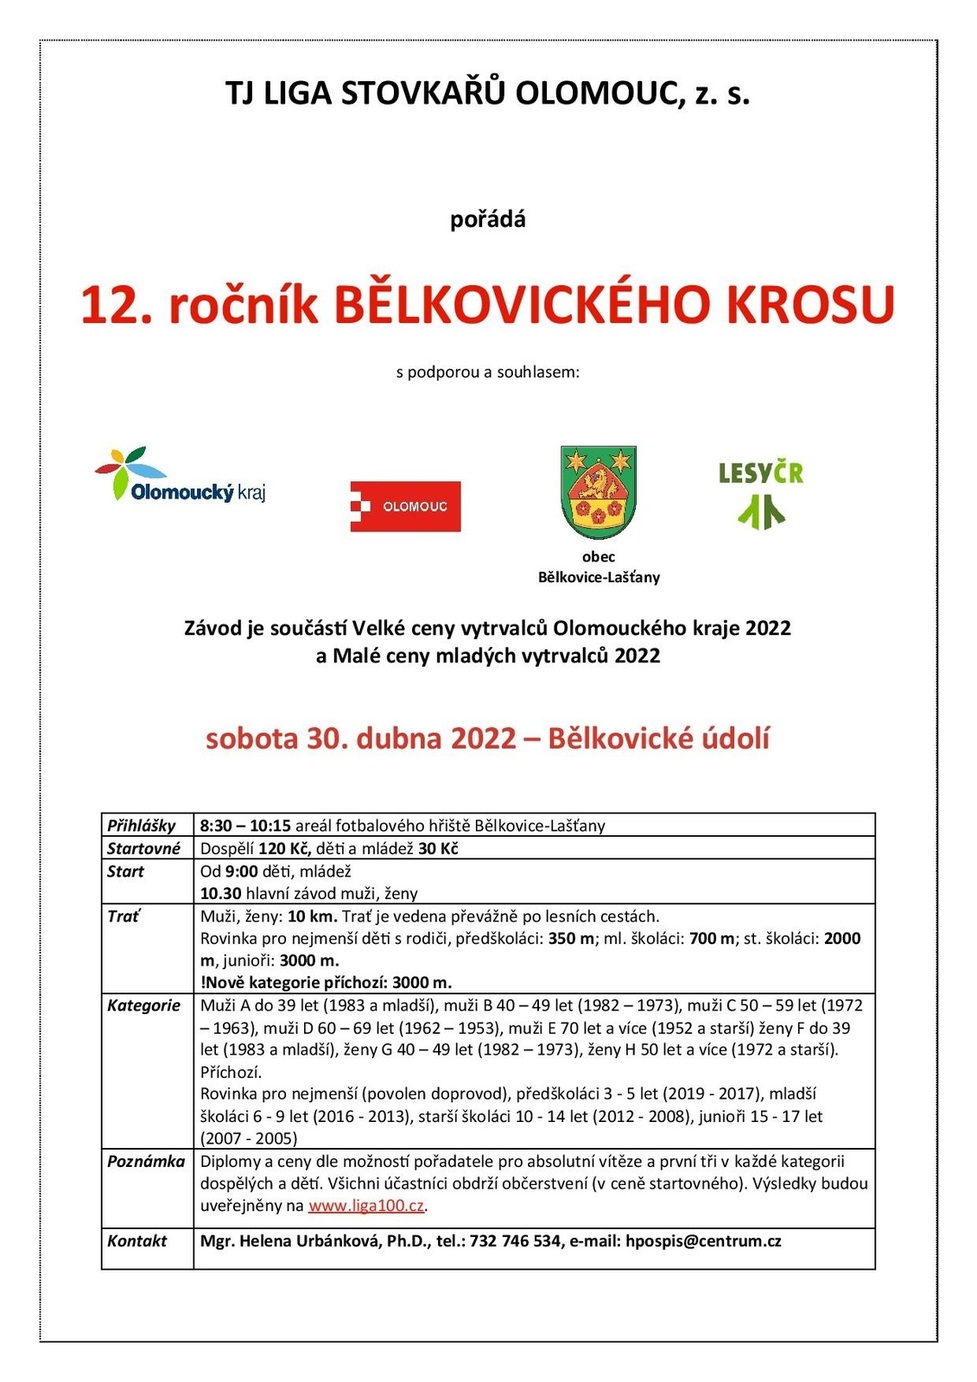 Bělkovický_kros_propozice_2022-1-page-001.jpg